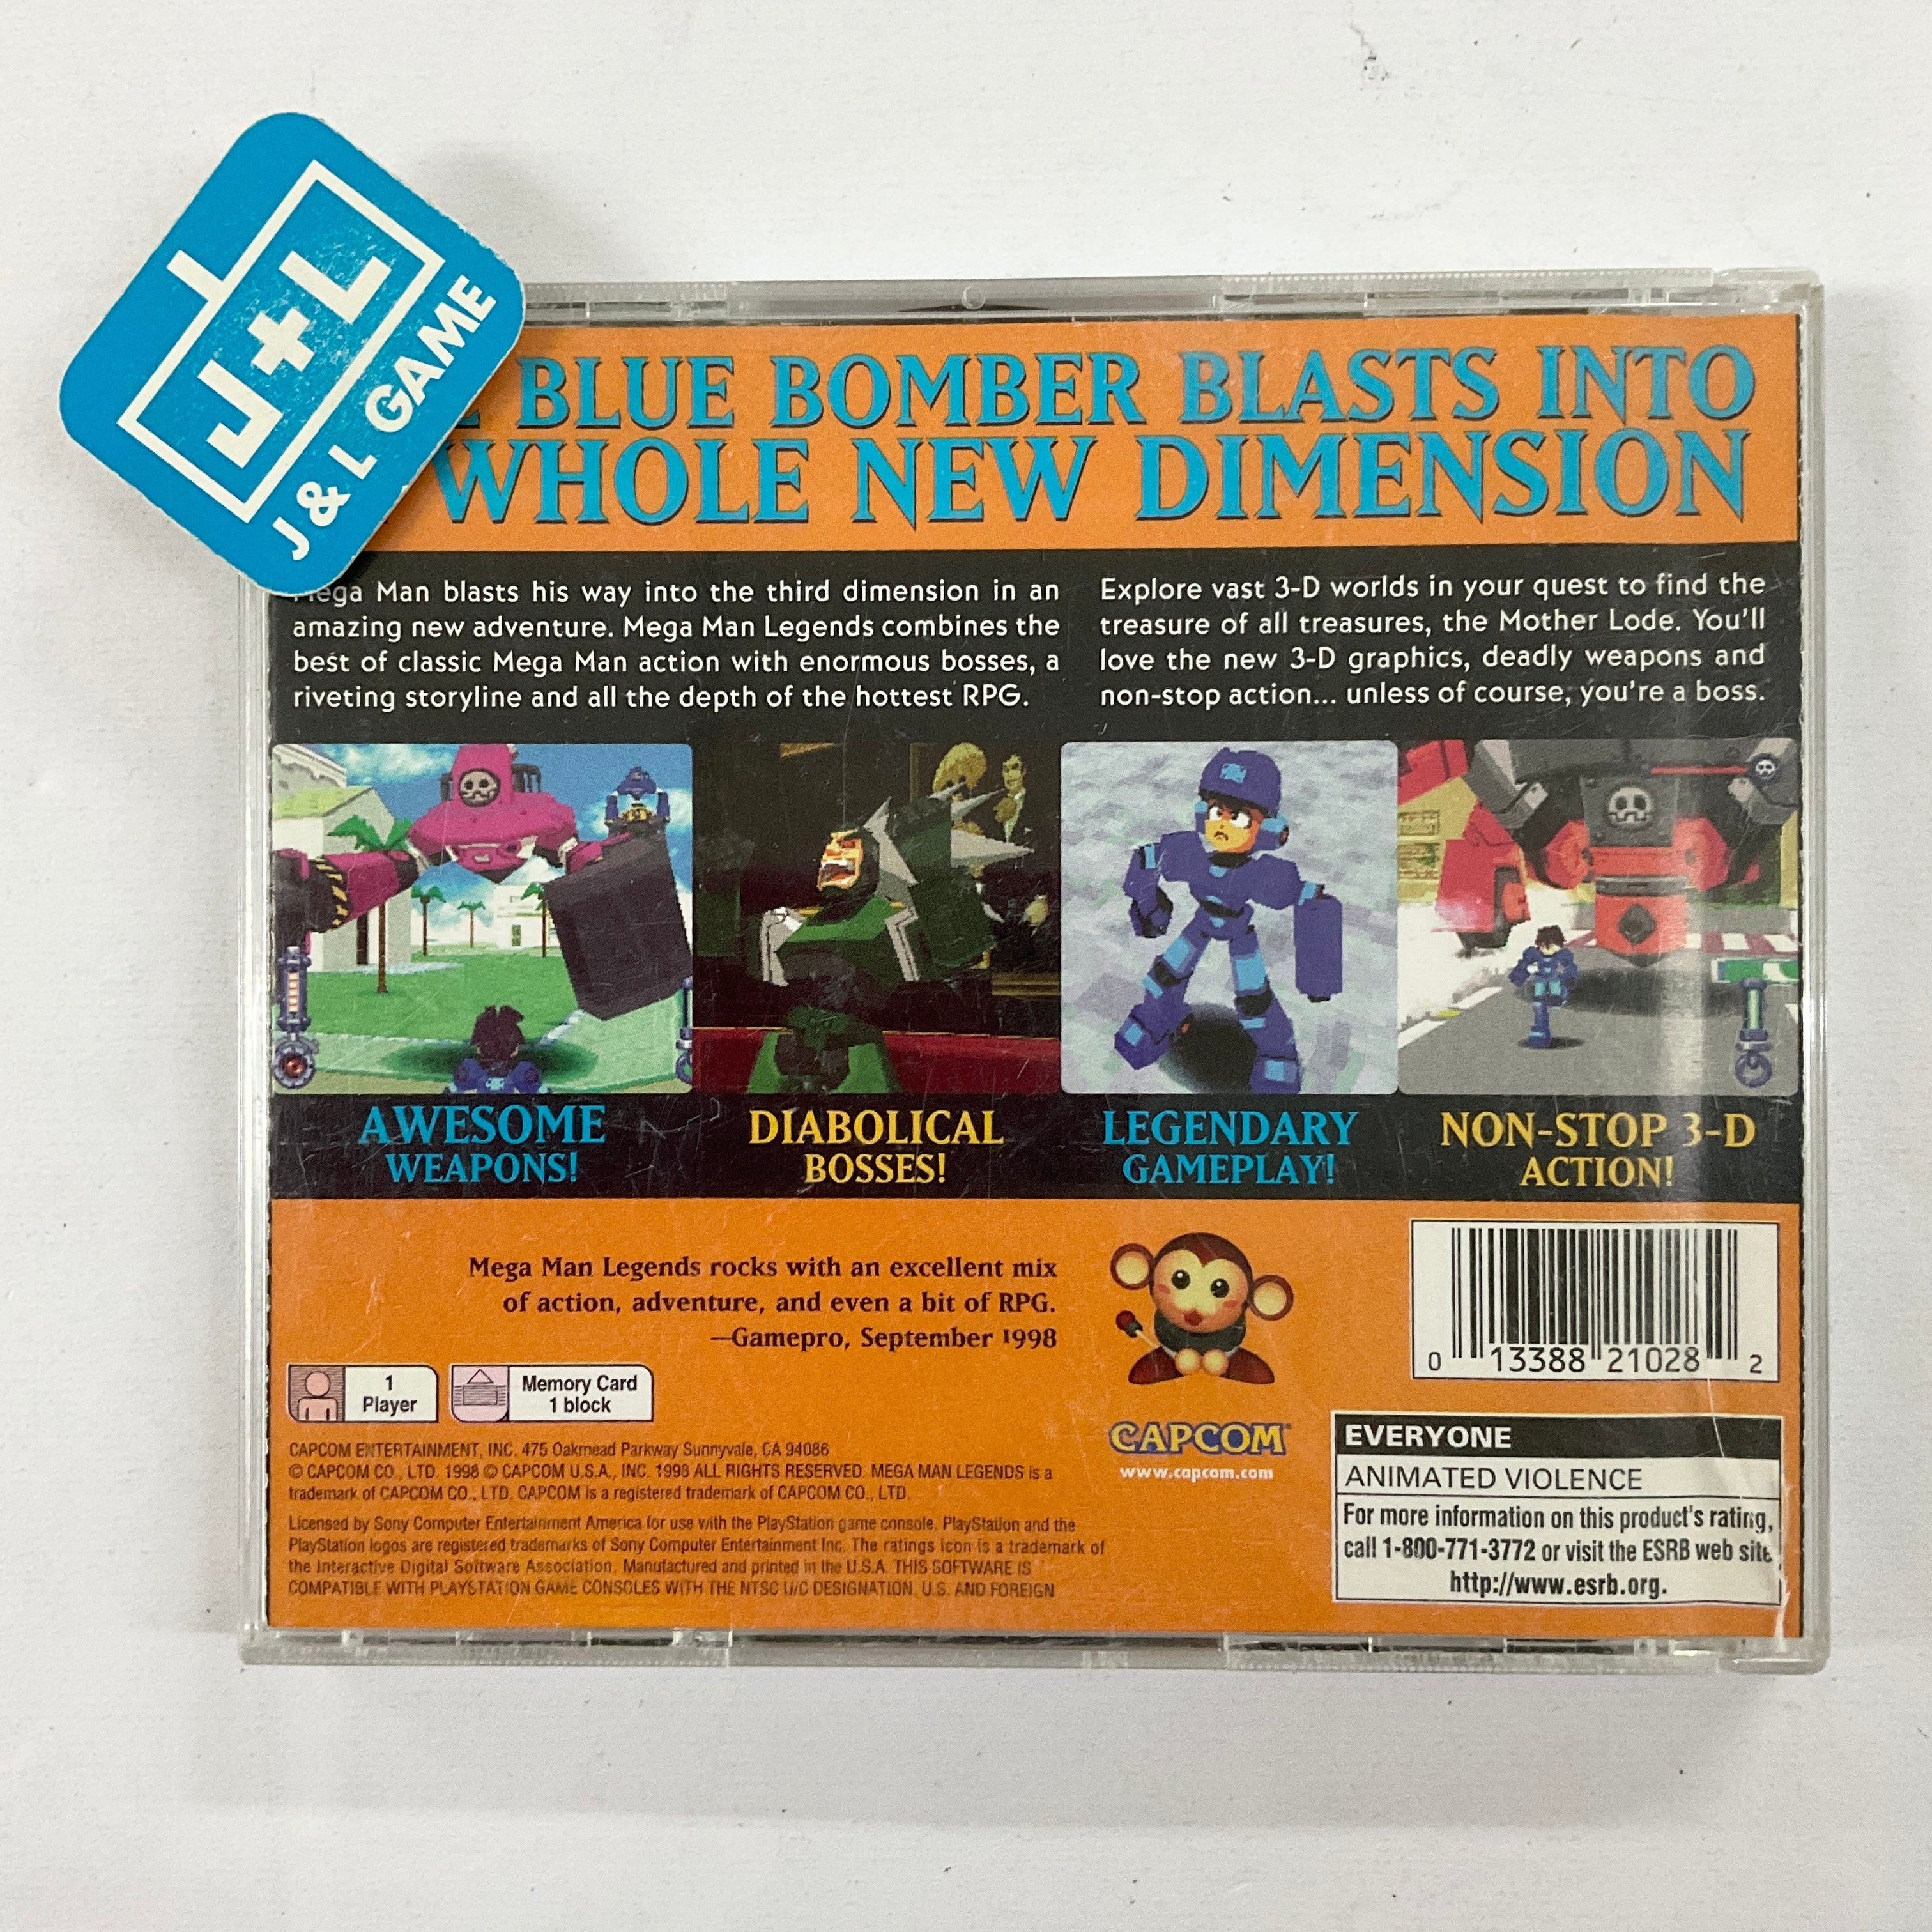 Mega Man Legends - (PS1) PlayStation 1 [Pre-Owned] Video Games Capcom   